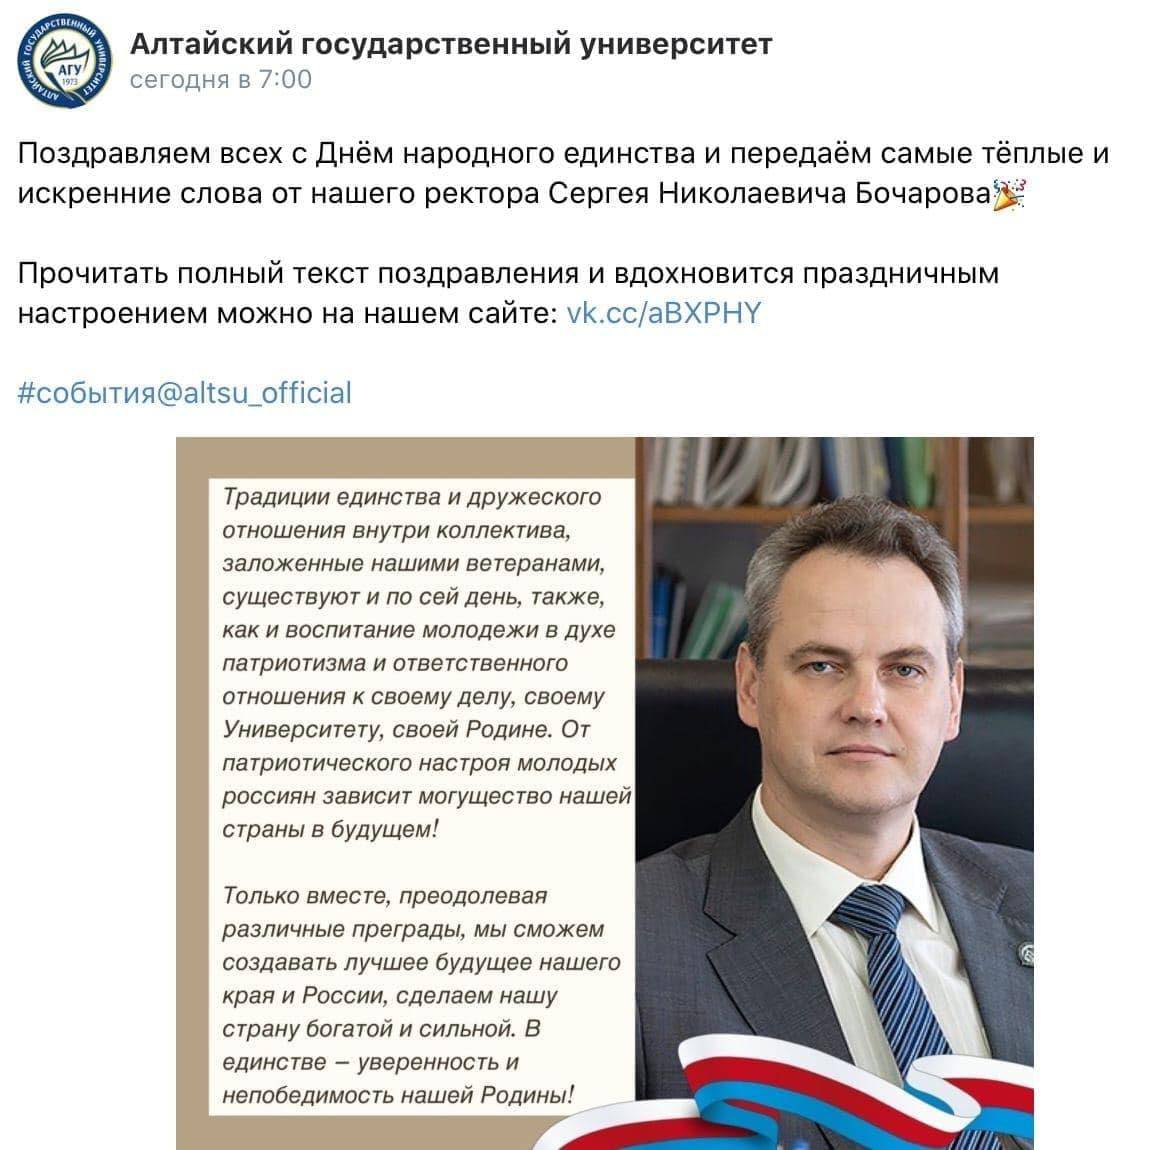 Алтайский госуниверситет избегает комментариев скандале флагом Богемии Моравии поздравлением ректора